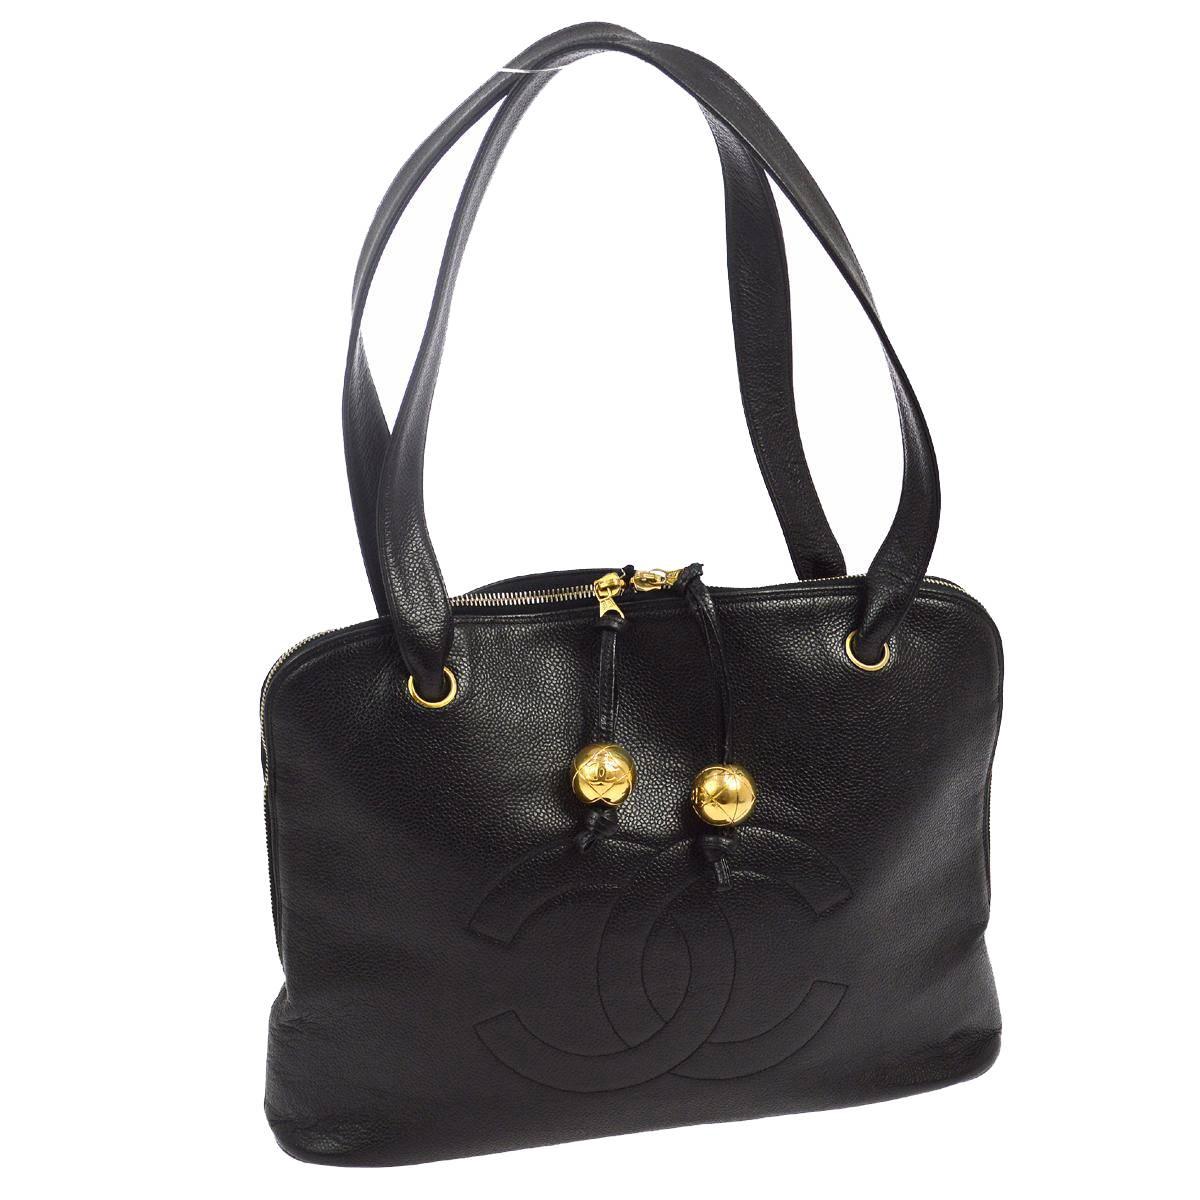 Chanel Black Leather Large Carryall Weekender Travel Tote Shoulder Bag